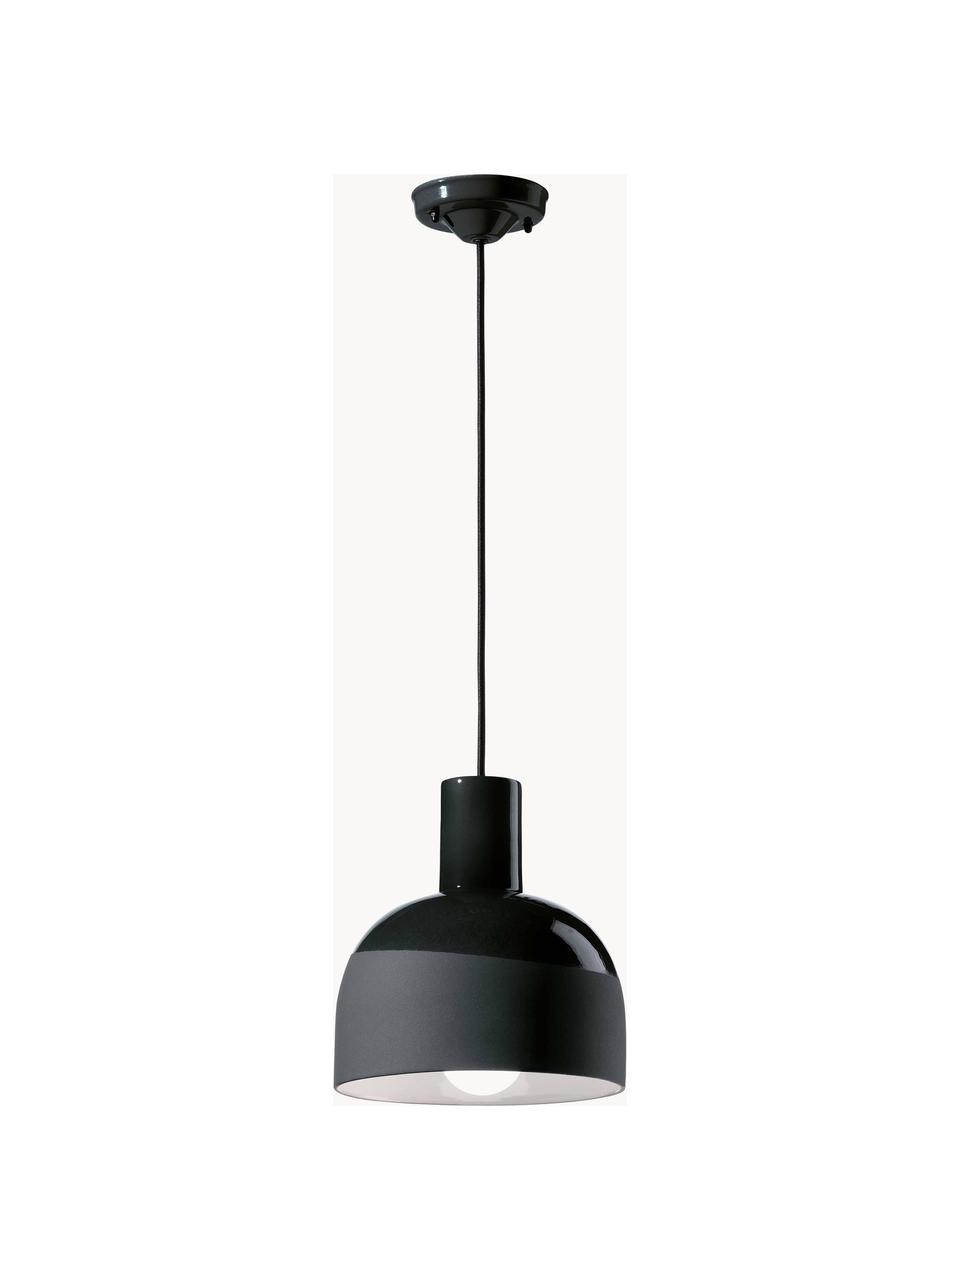 Petite suspension artisanale Caxixi, Noir, Ø 22 x haut. 27 cm